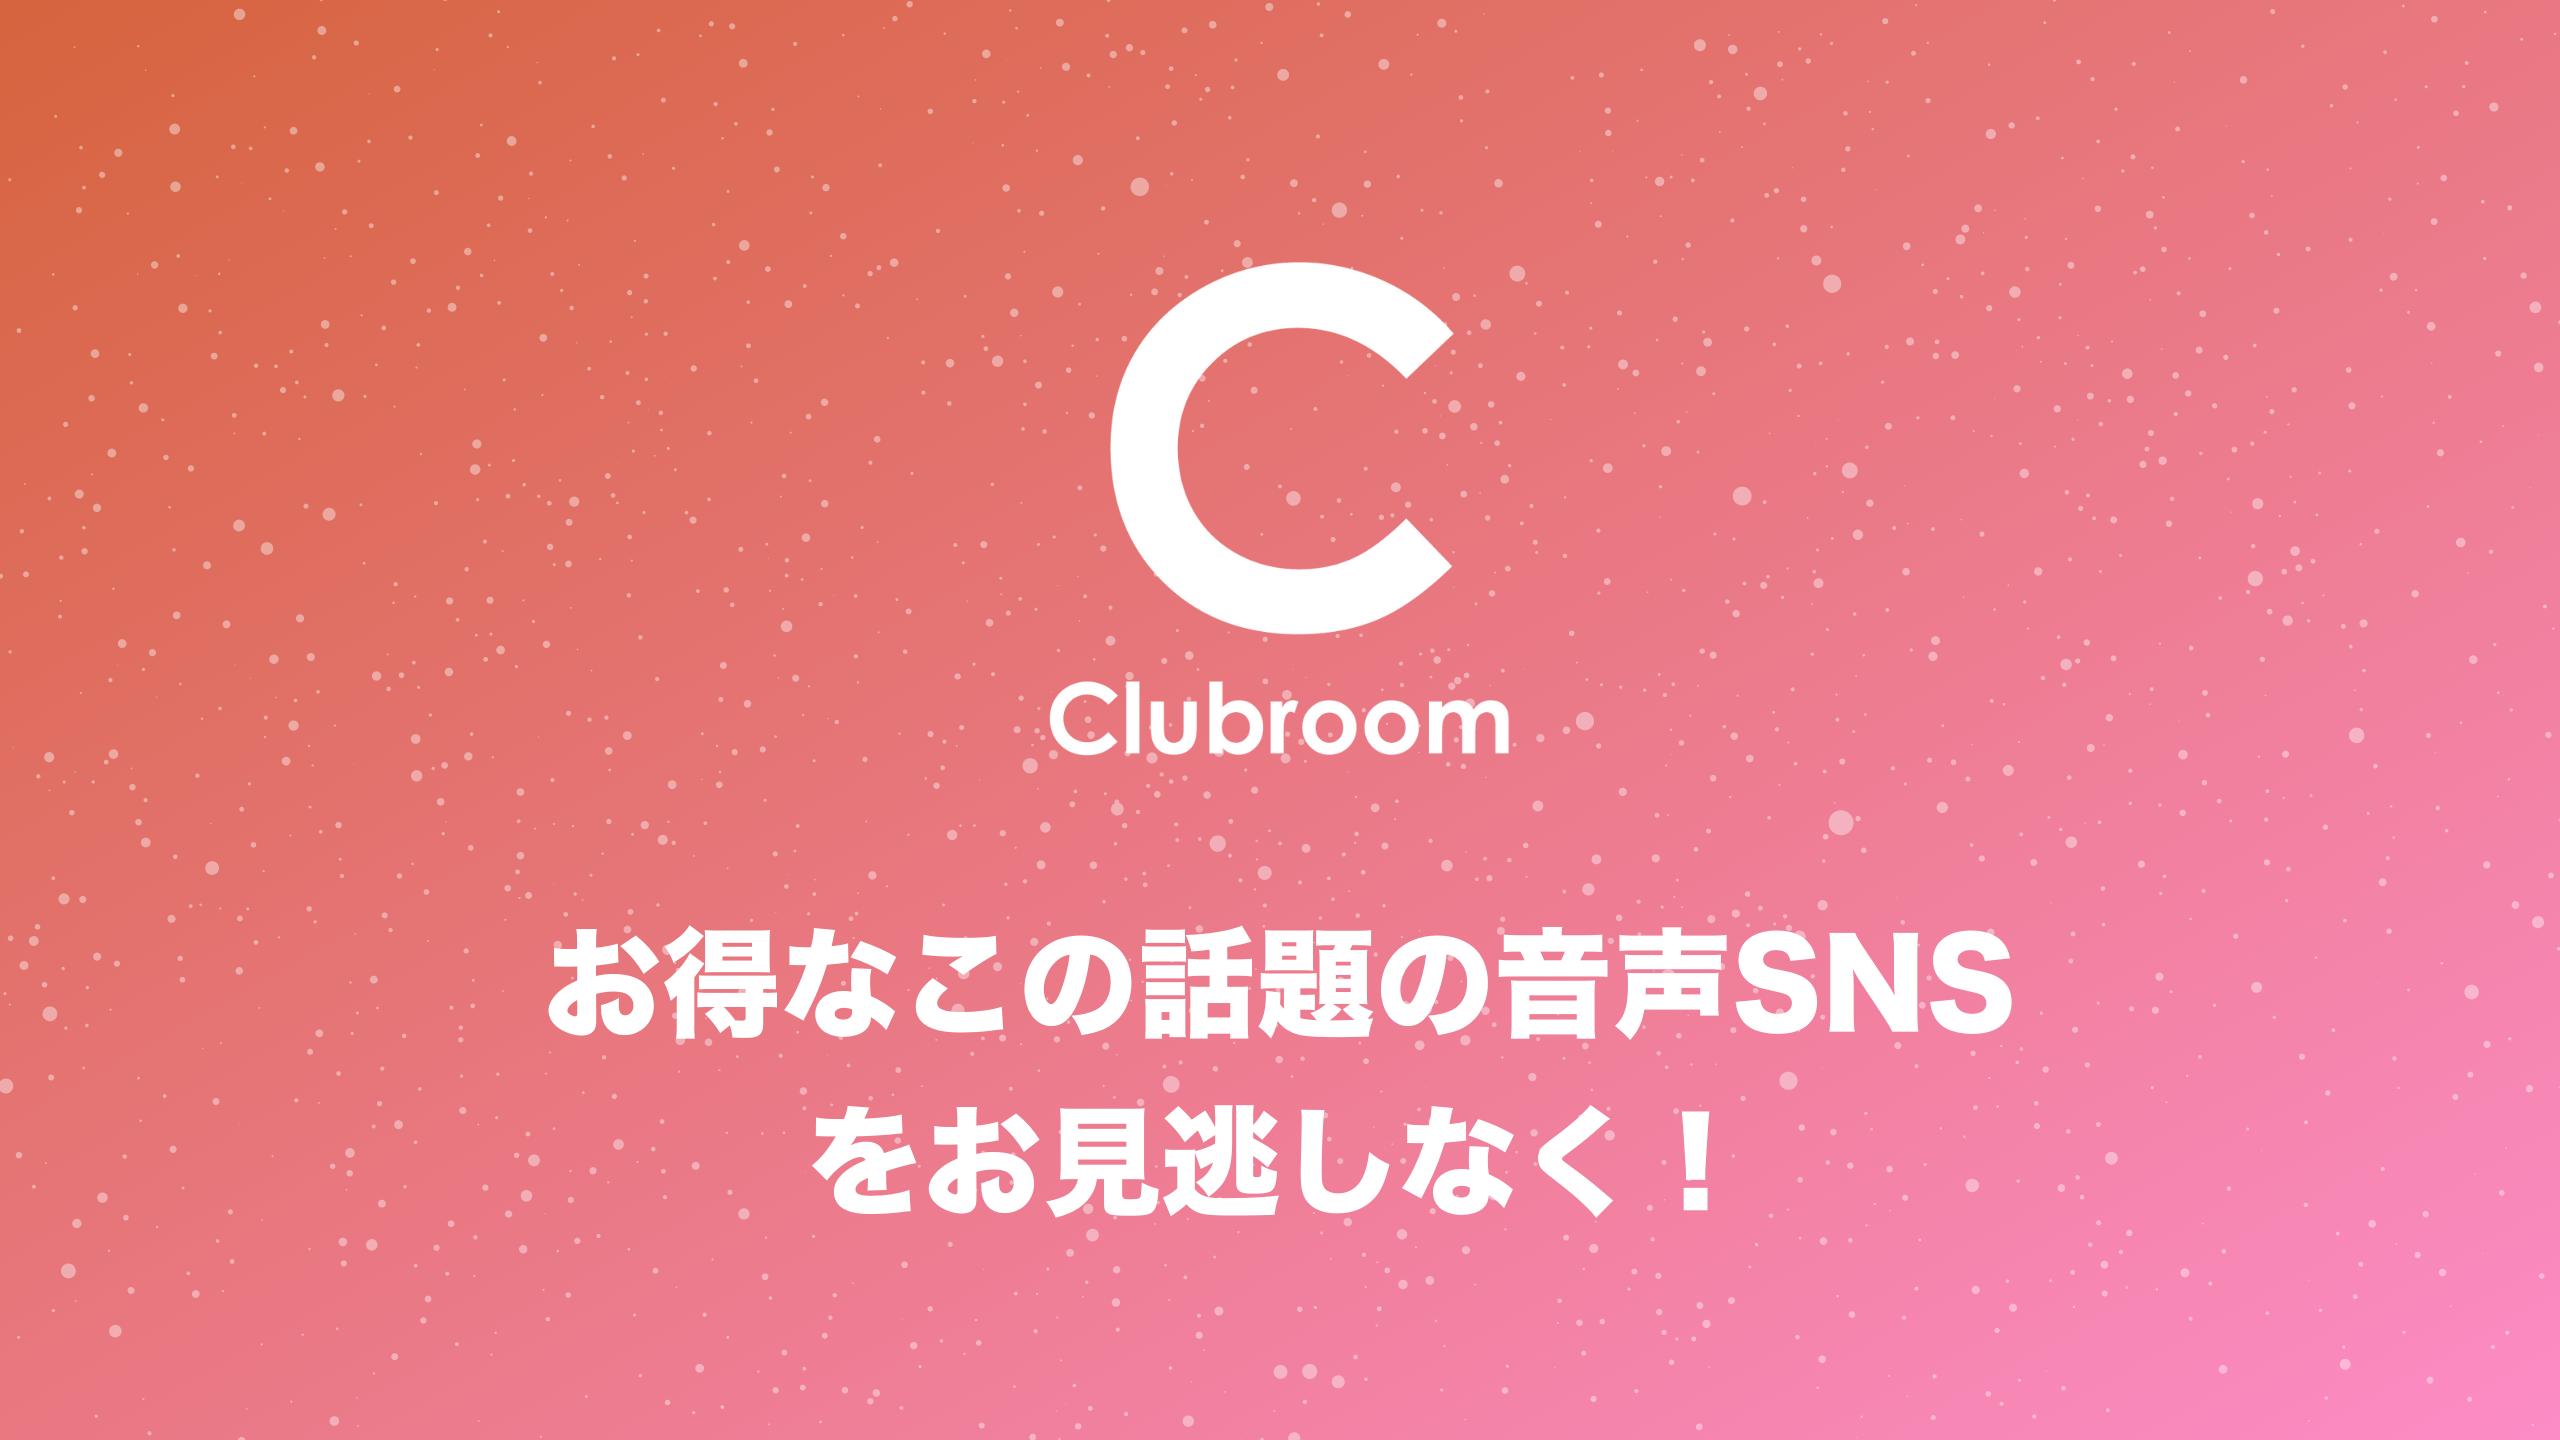 Android 用の 音声sns 無料ボイスライブチャットルーム クラブハウスandroid Clubroom Apk をダウンロード